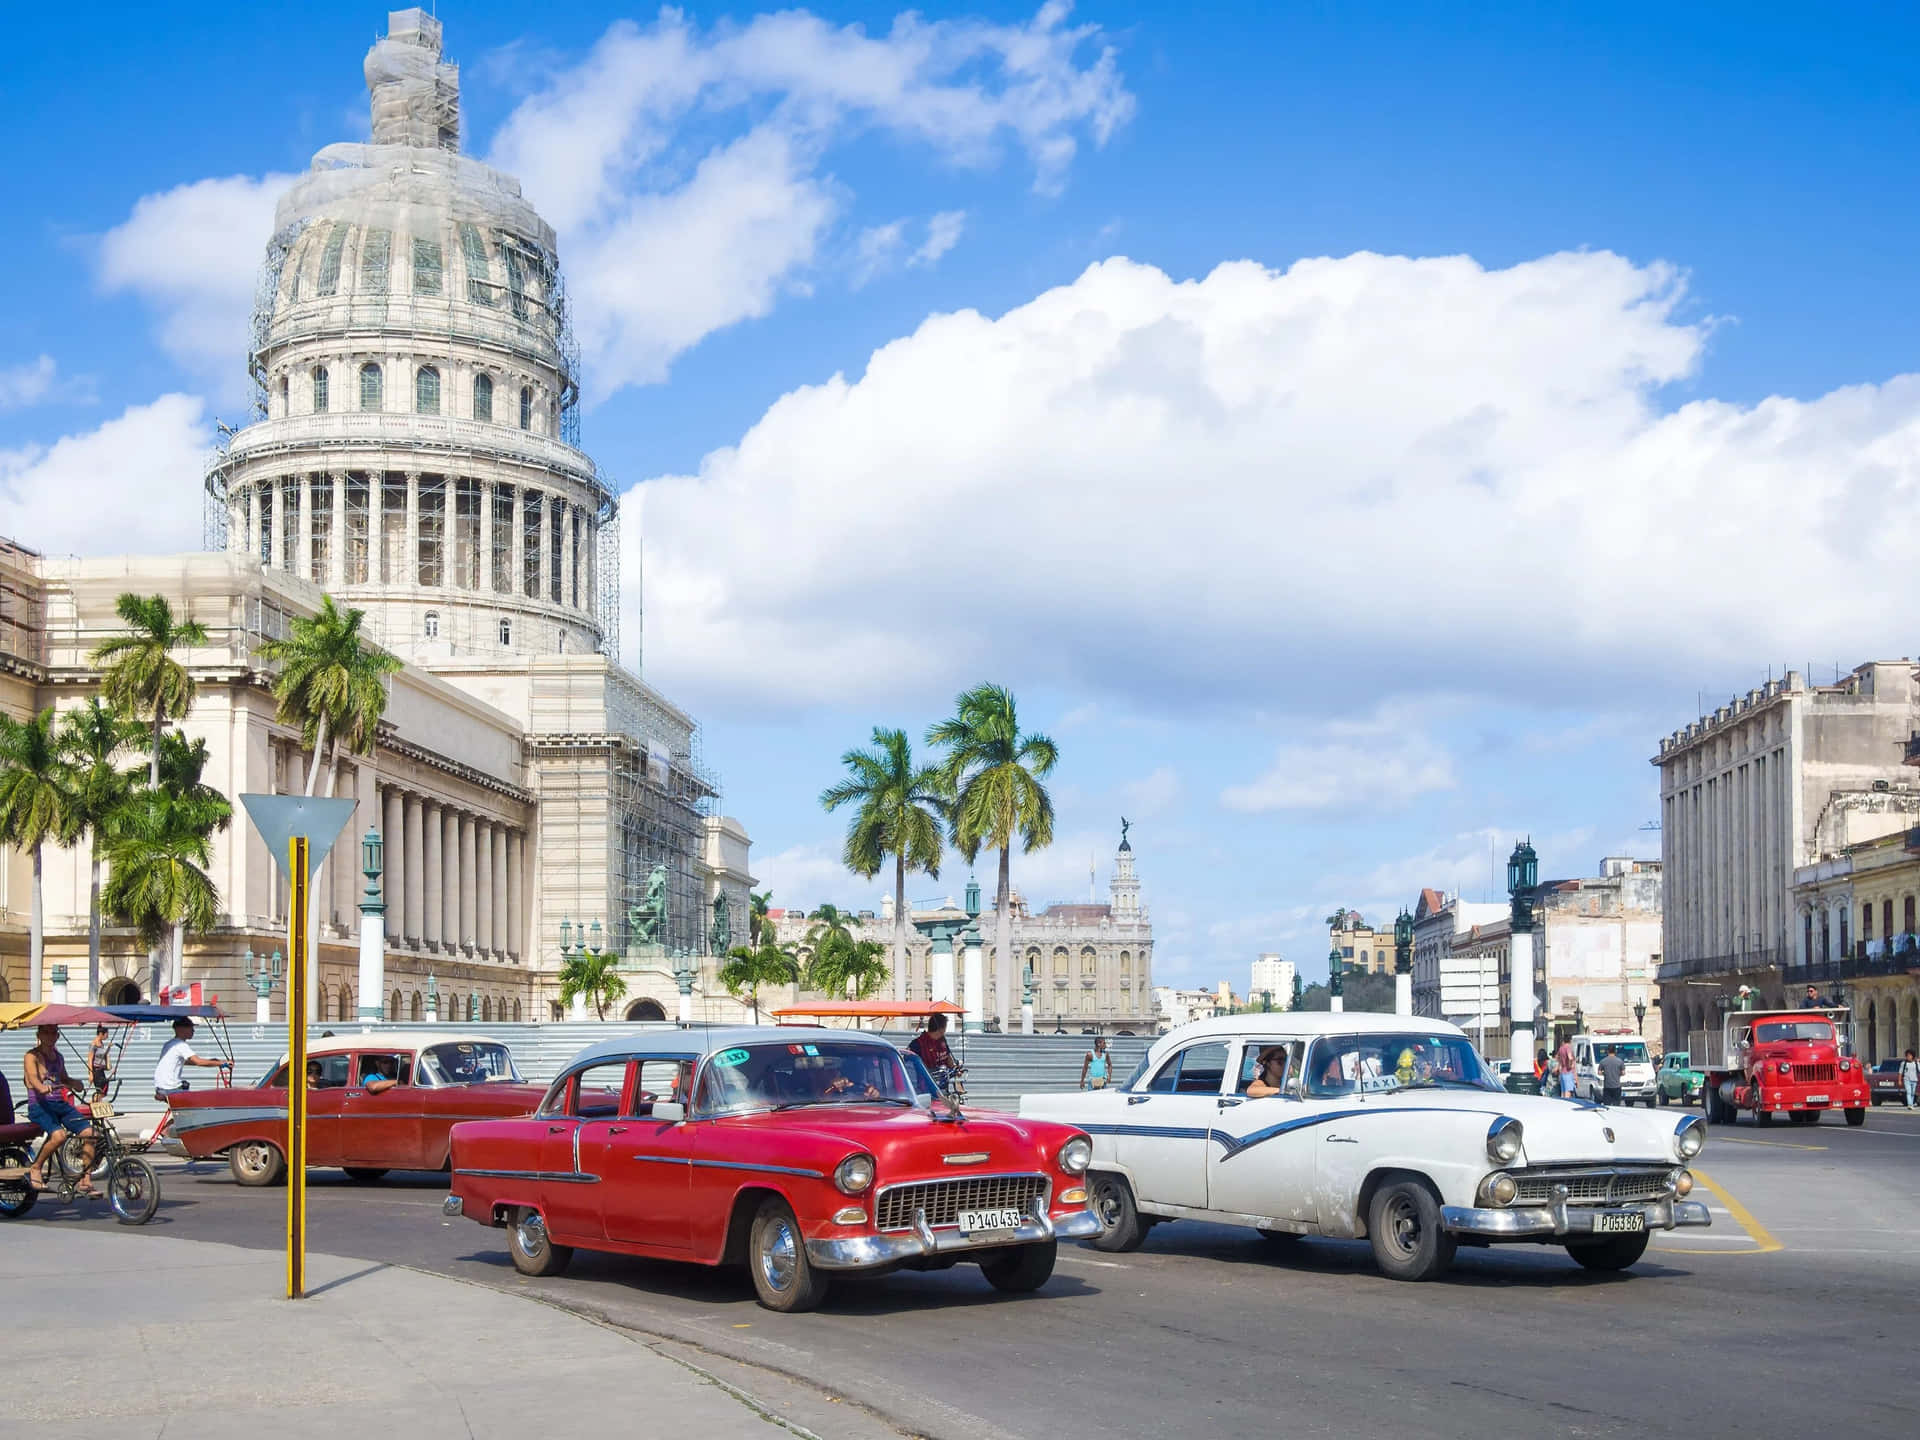 Sumérgeteen Las Calles Bañadas Por El Sol Y La Vibrante Cultura De Cuba.